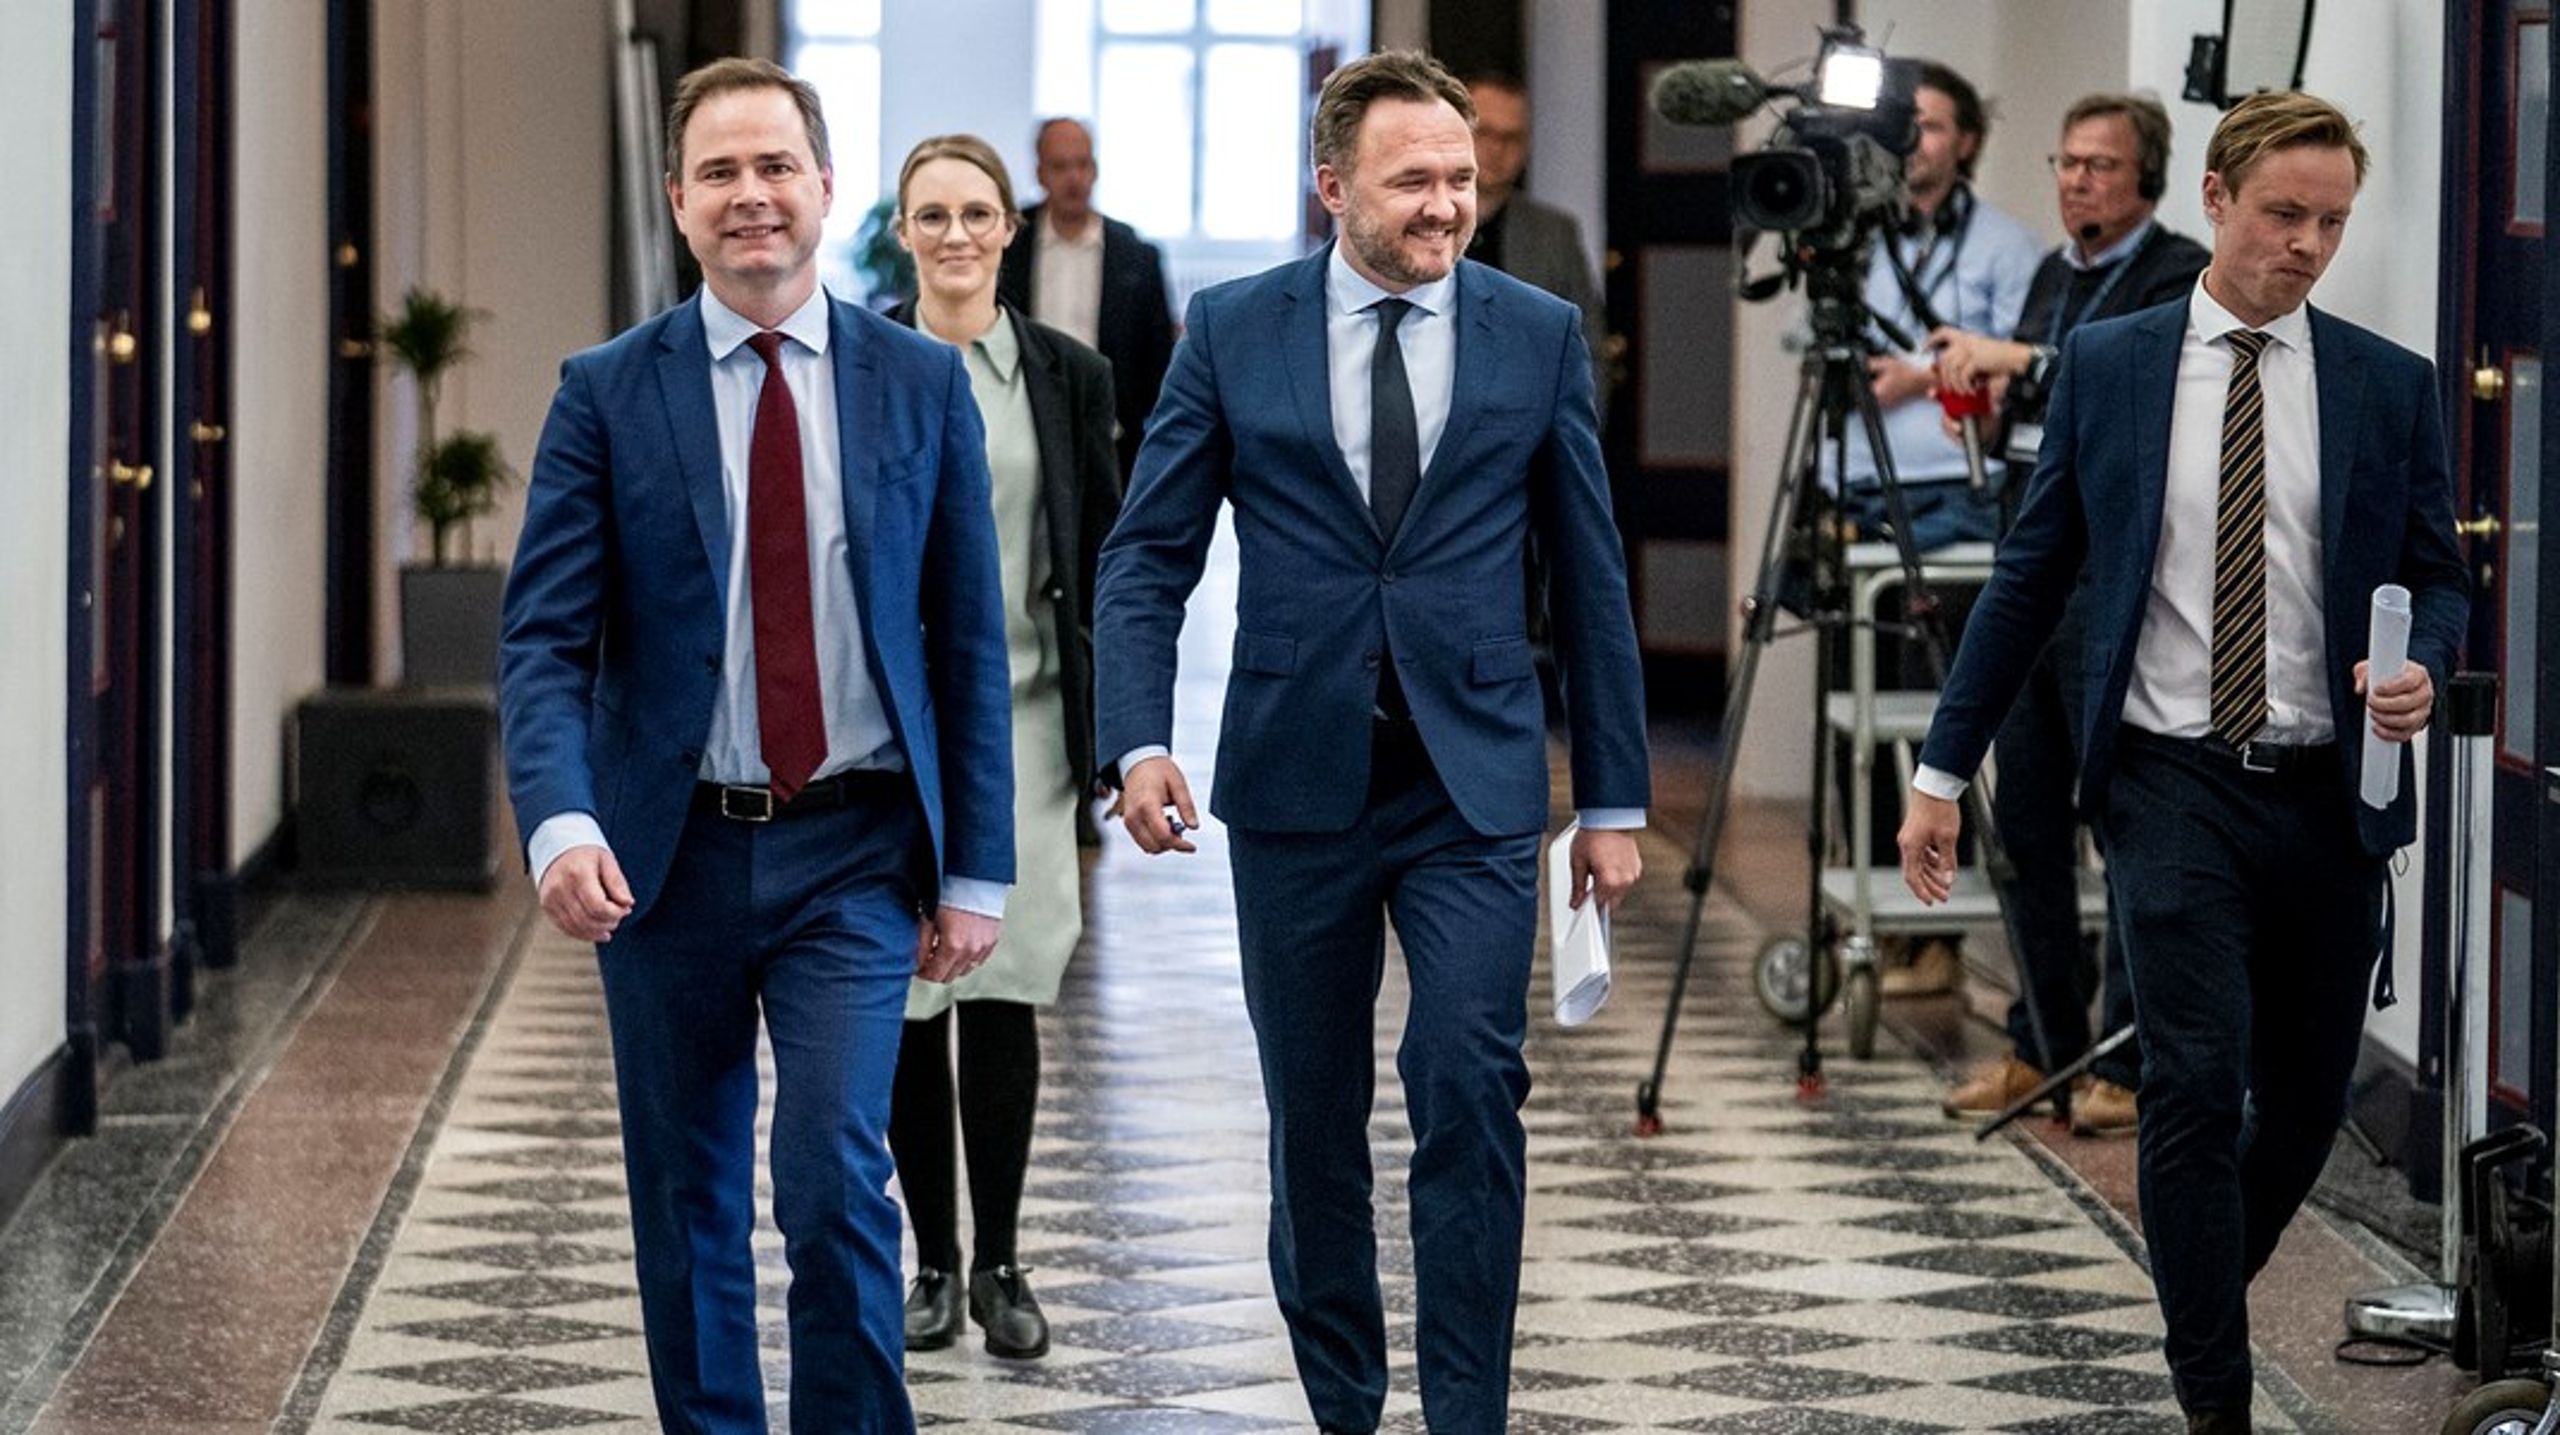 Finansminister Nicolai Wammen (S) og klimaminister Dan Jørgensen (S) tager begge til COP26 i Glasgow, der bliver velbesøgt at den danske regering.